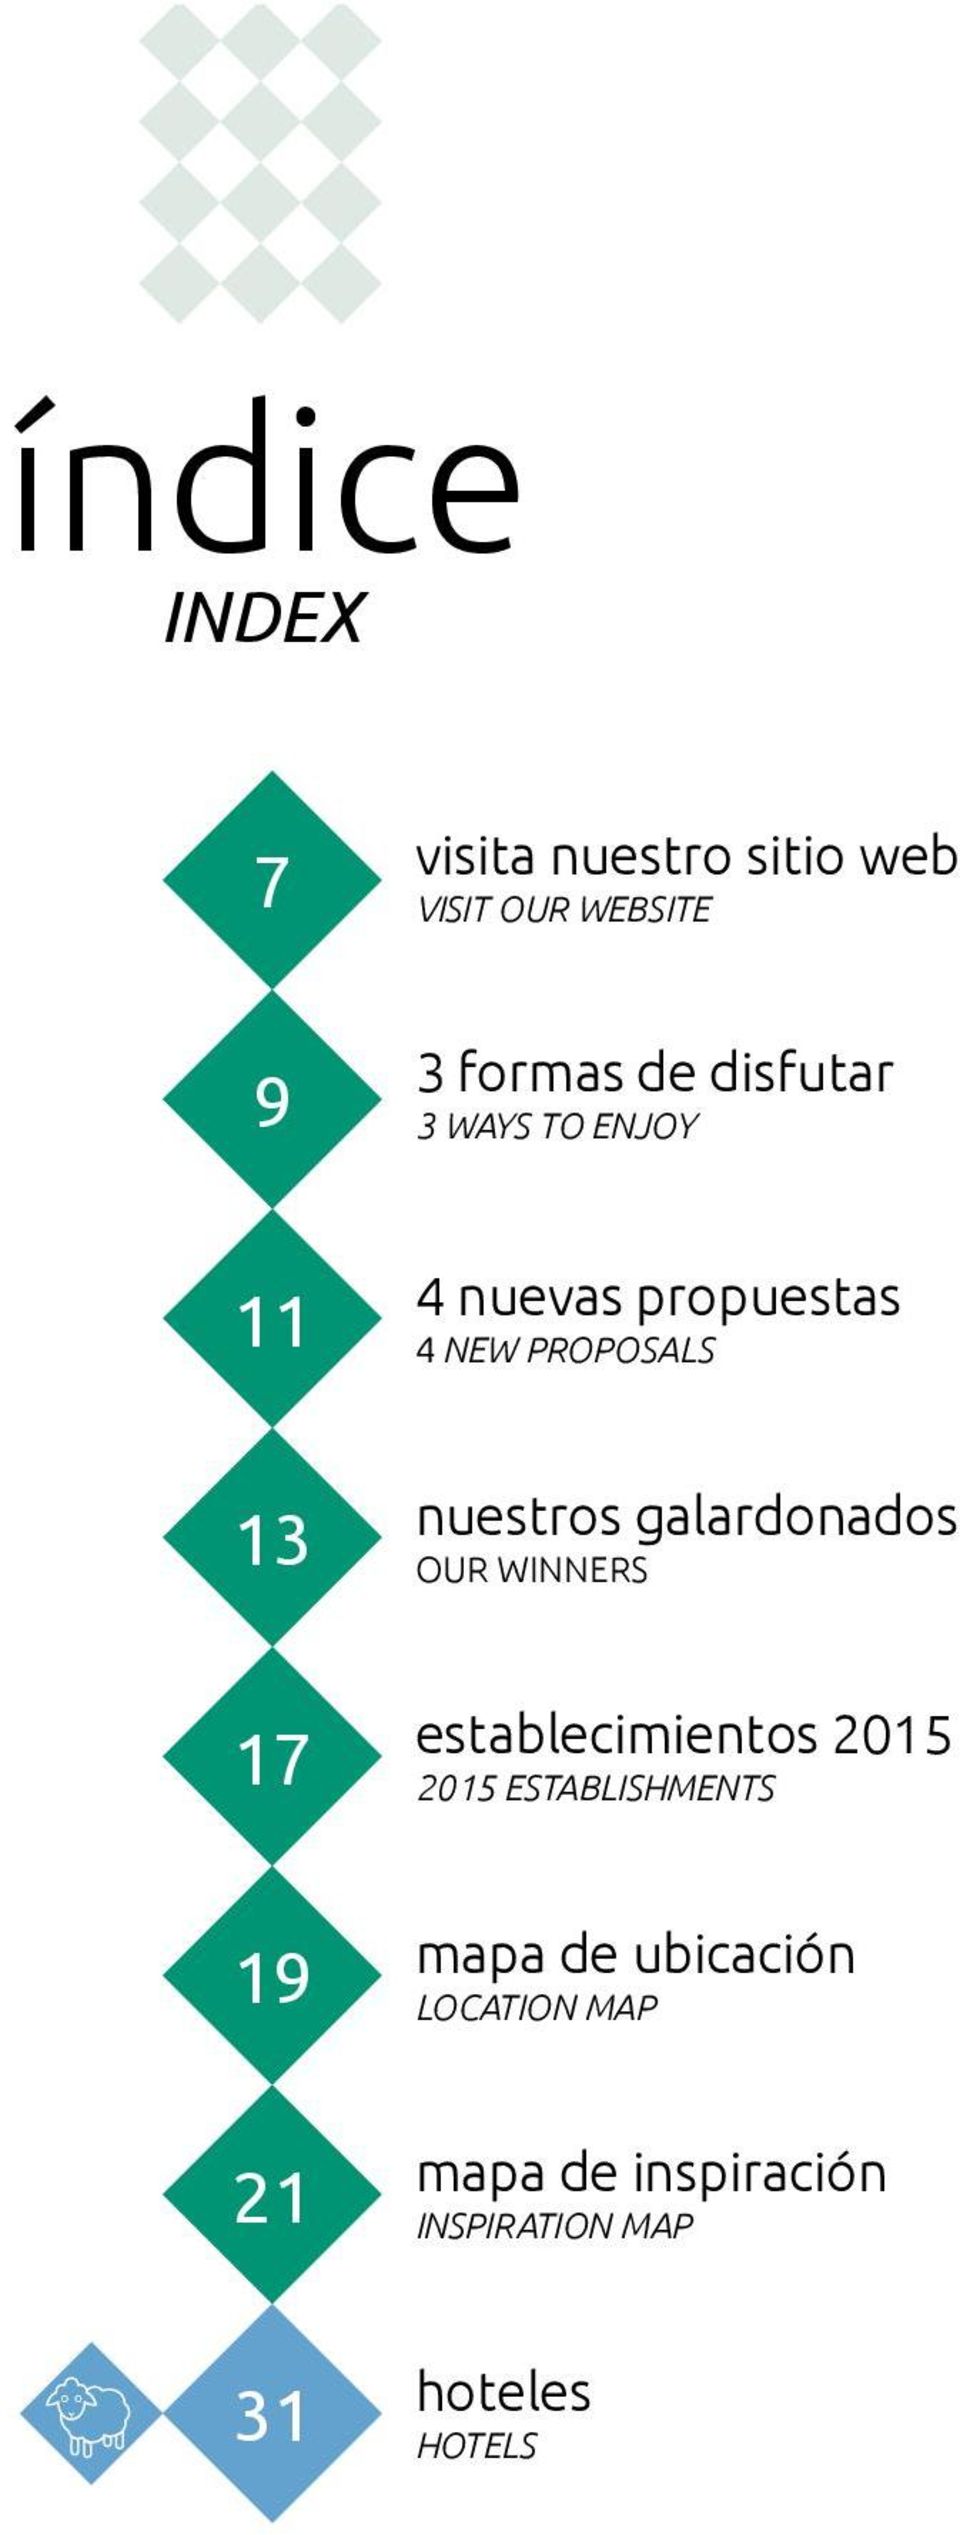 proposals nuestros galardonados Our winners establecimientos 2015 2015